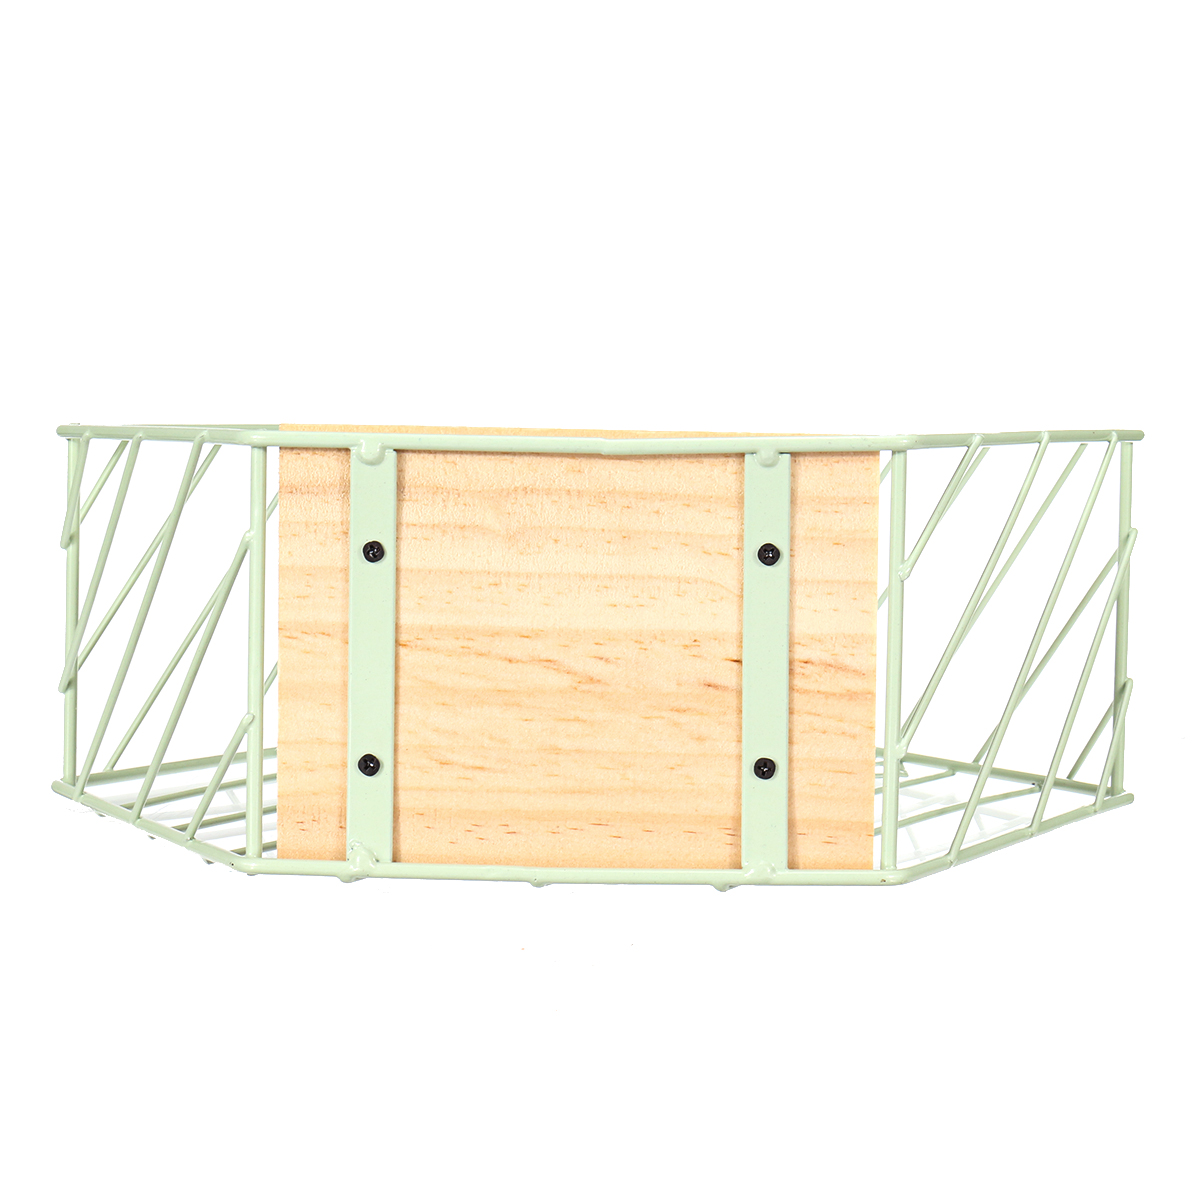 Vintage-Wall-Unit-Retro-Wood-Industrial-Style-Metal-Shelf-Rack-Storage-Display-1575327-9